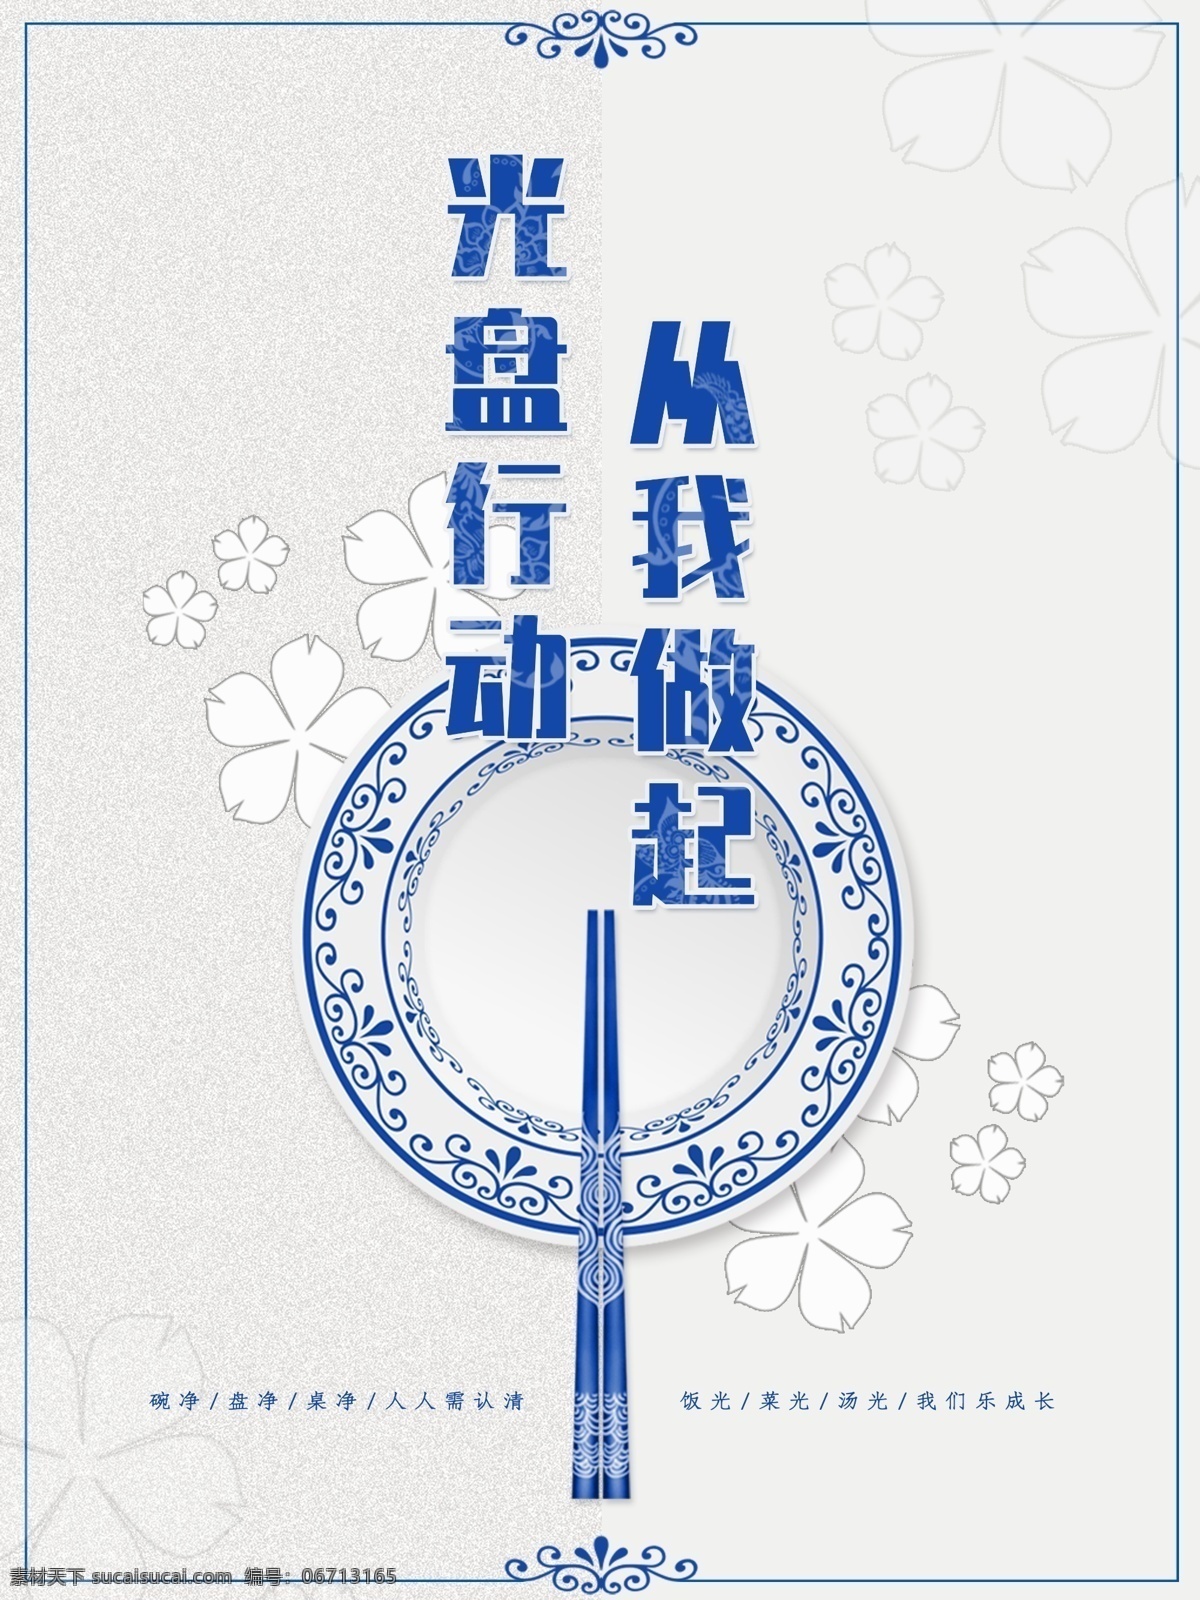 公益海报图片 光盘行动 海报 广告 学校食堂 餐厅 青花瓷 筷子 白色底面 公益 公众场所 蓝色 纹样 图案 底纹 手机海报